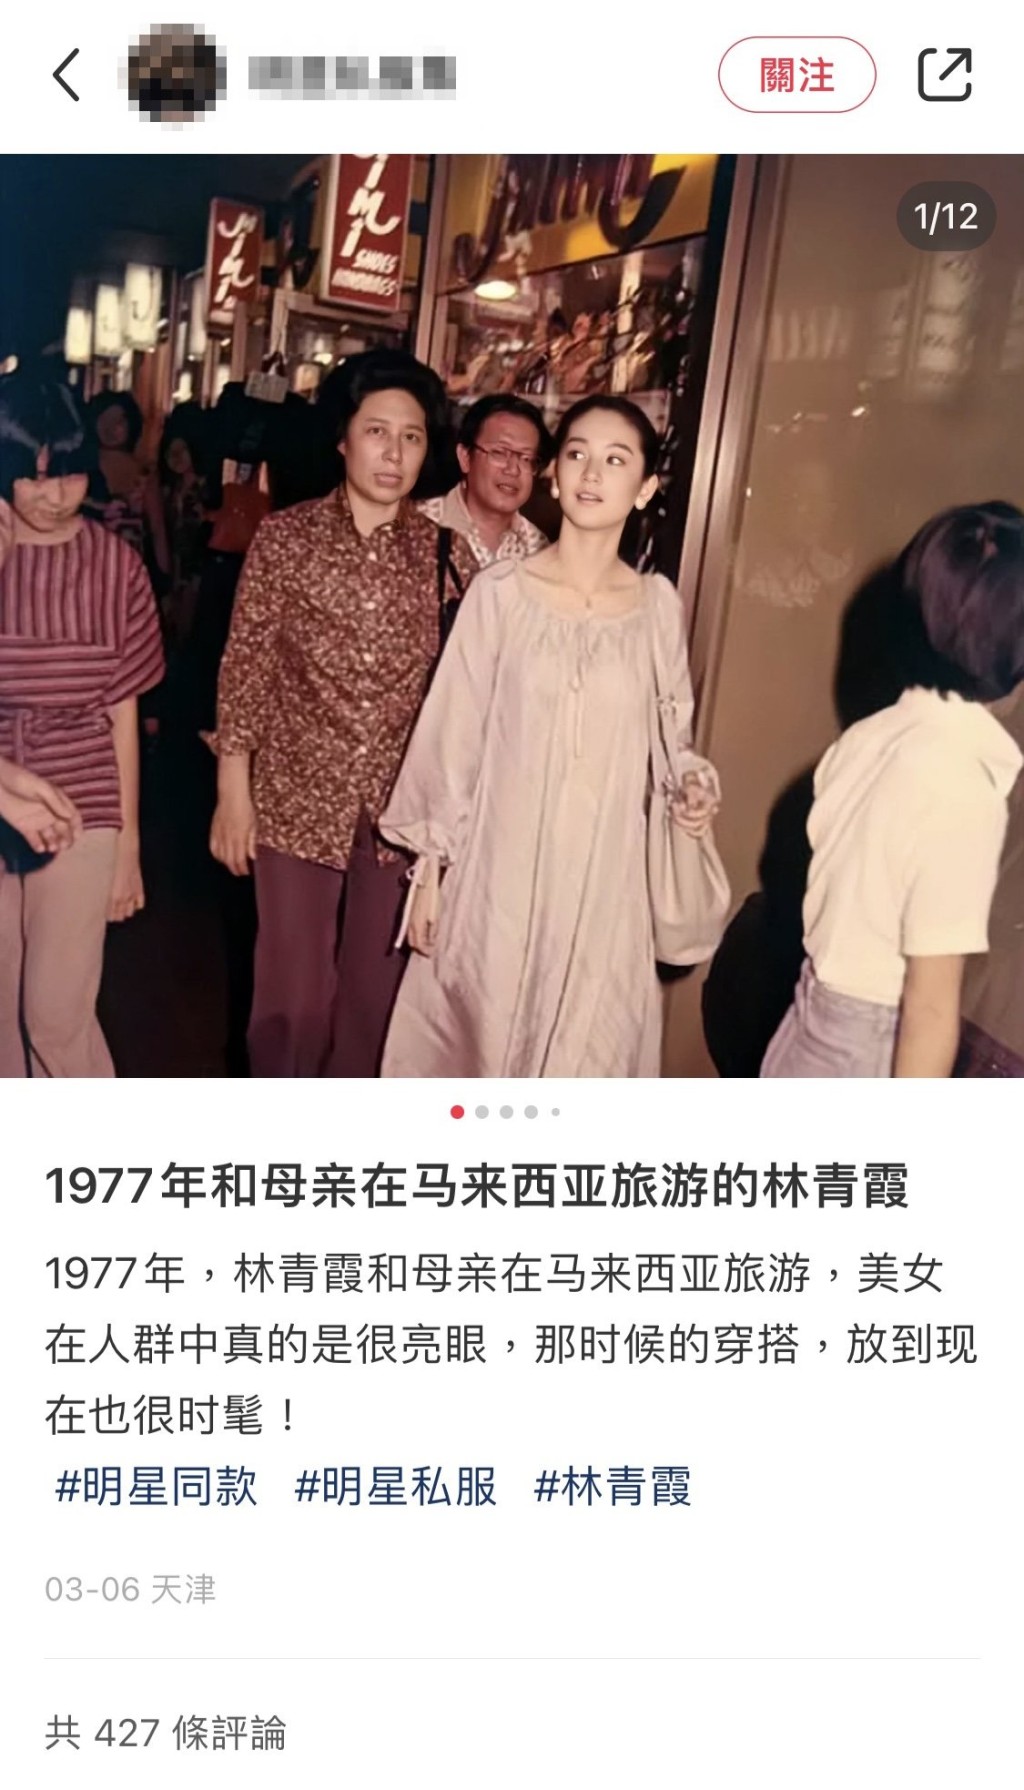 林青霞1977年游大马的照片，早前亦曾突然在网上流传。